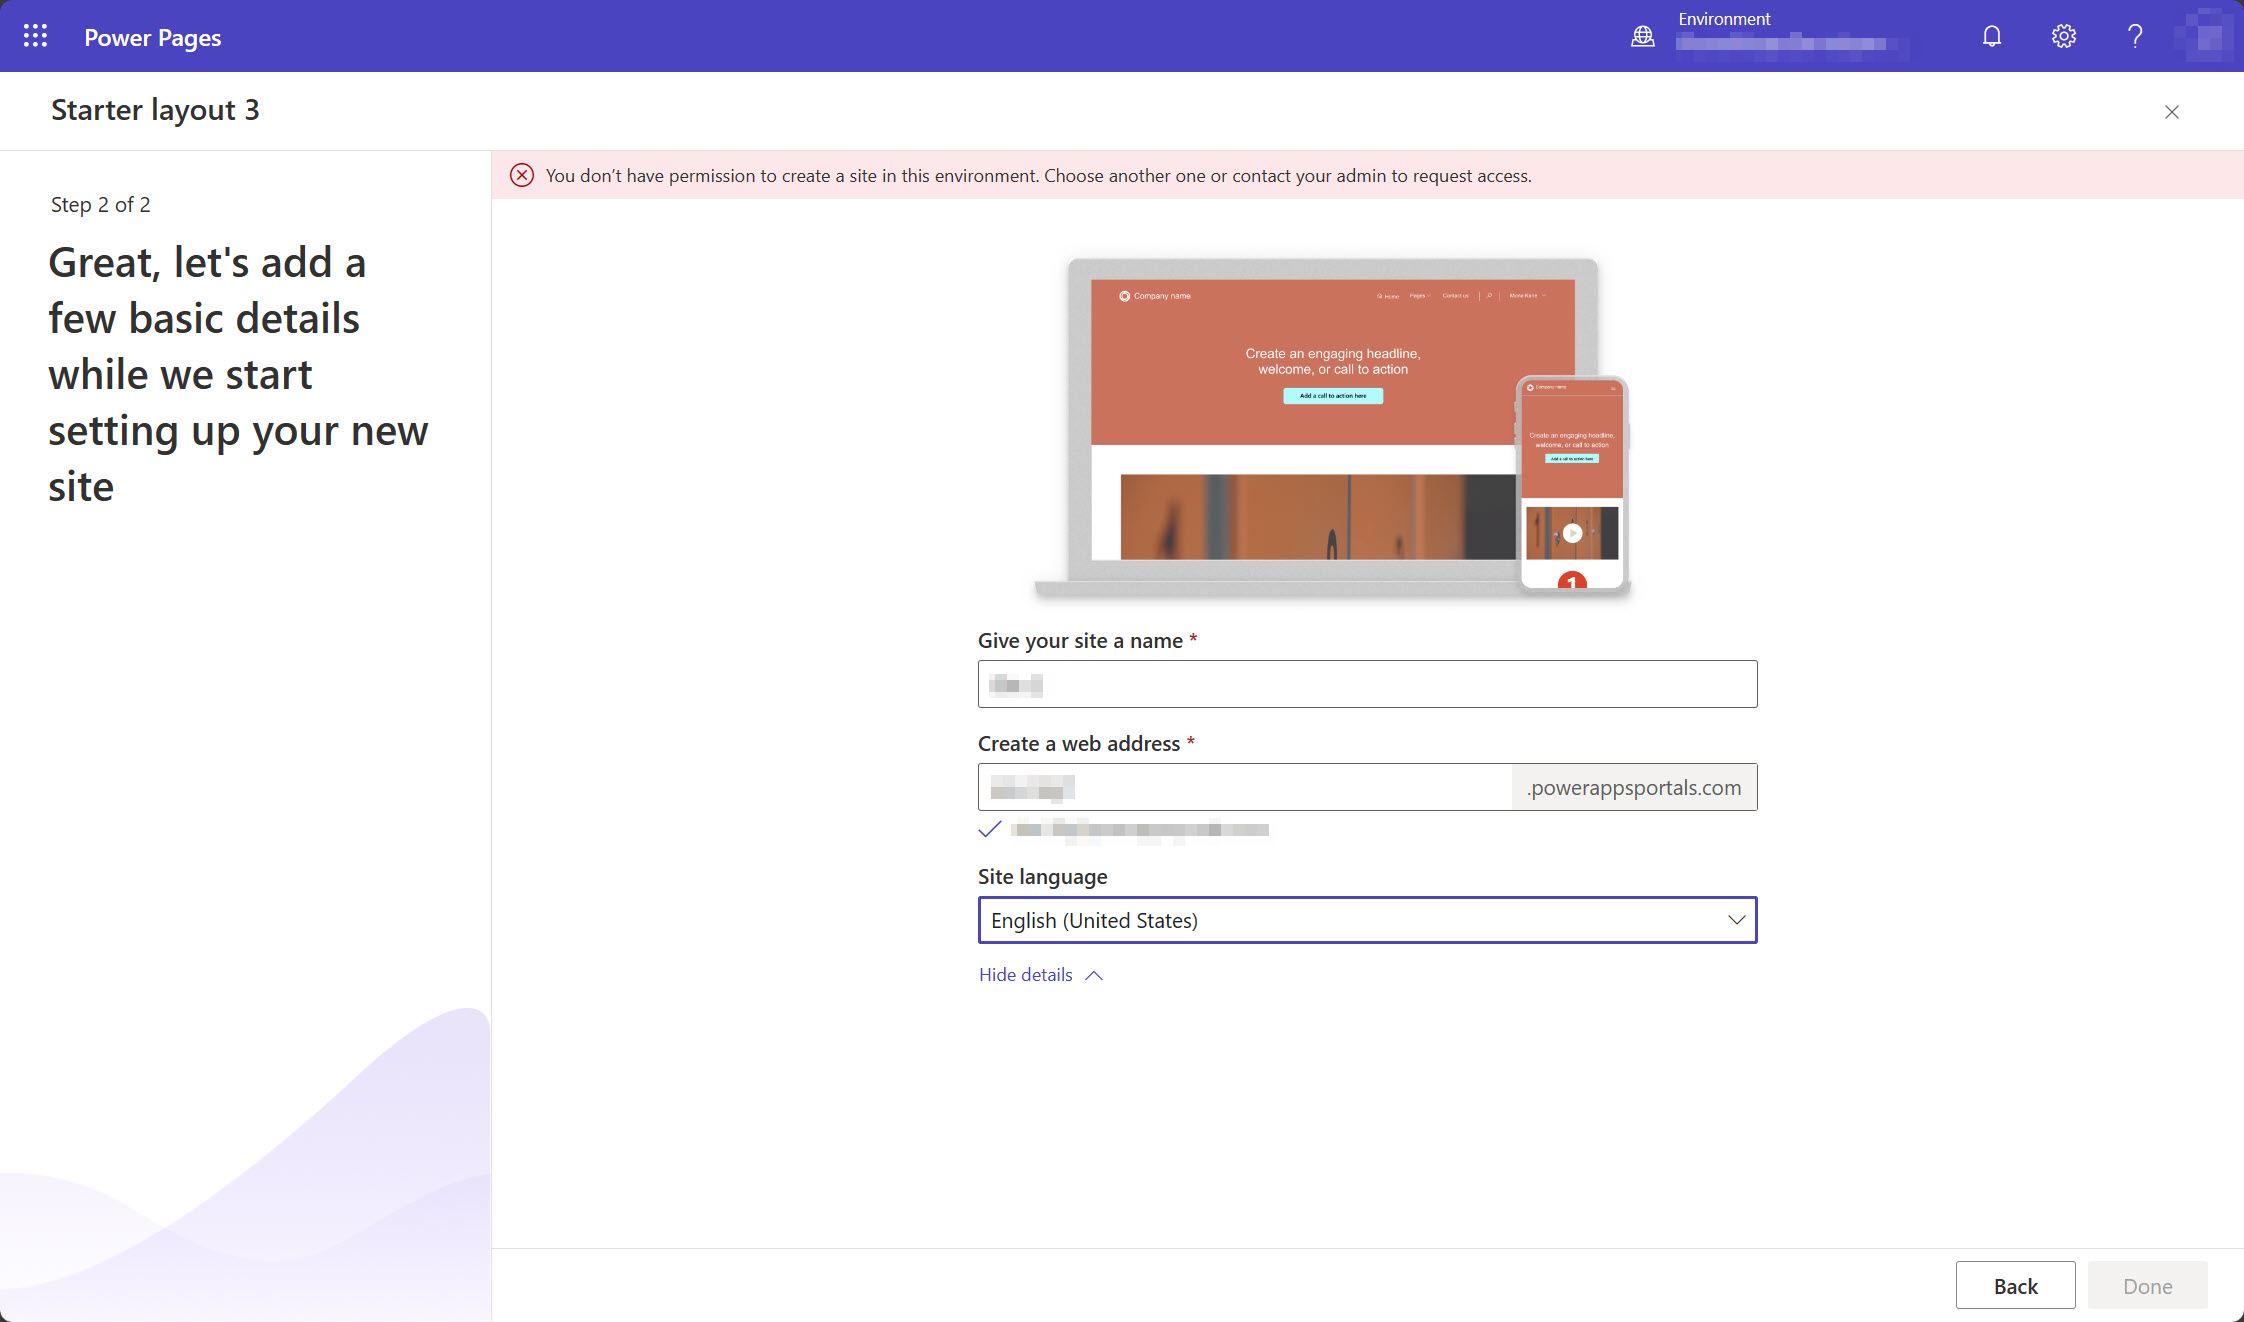 Una captura de pantalla del estudio de diseño Power Pages que muestra un mensaje que indica que el usuario no tiene permisos para crear un sitio en el entorno que ha seleccionado.